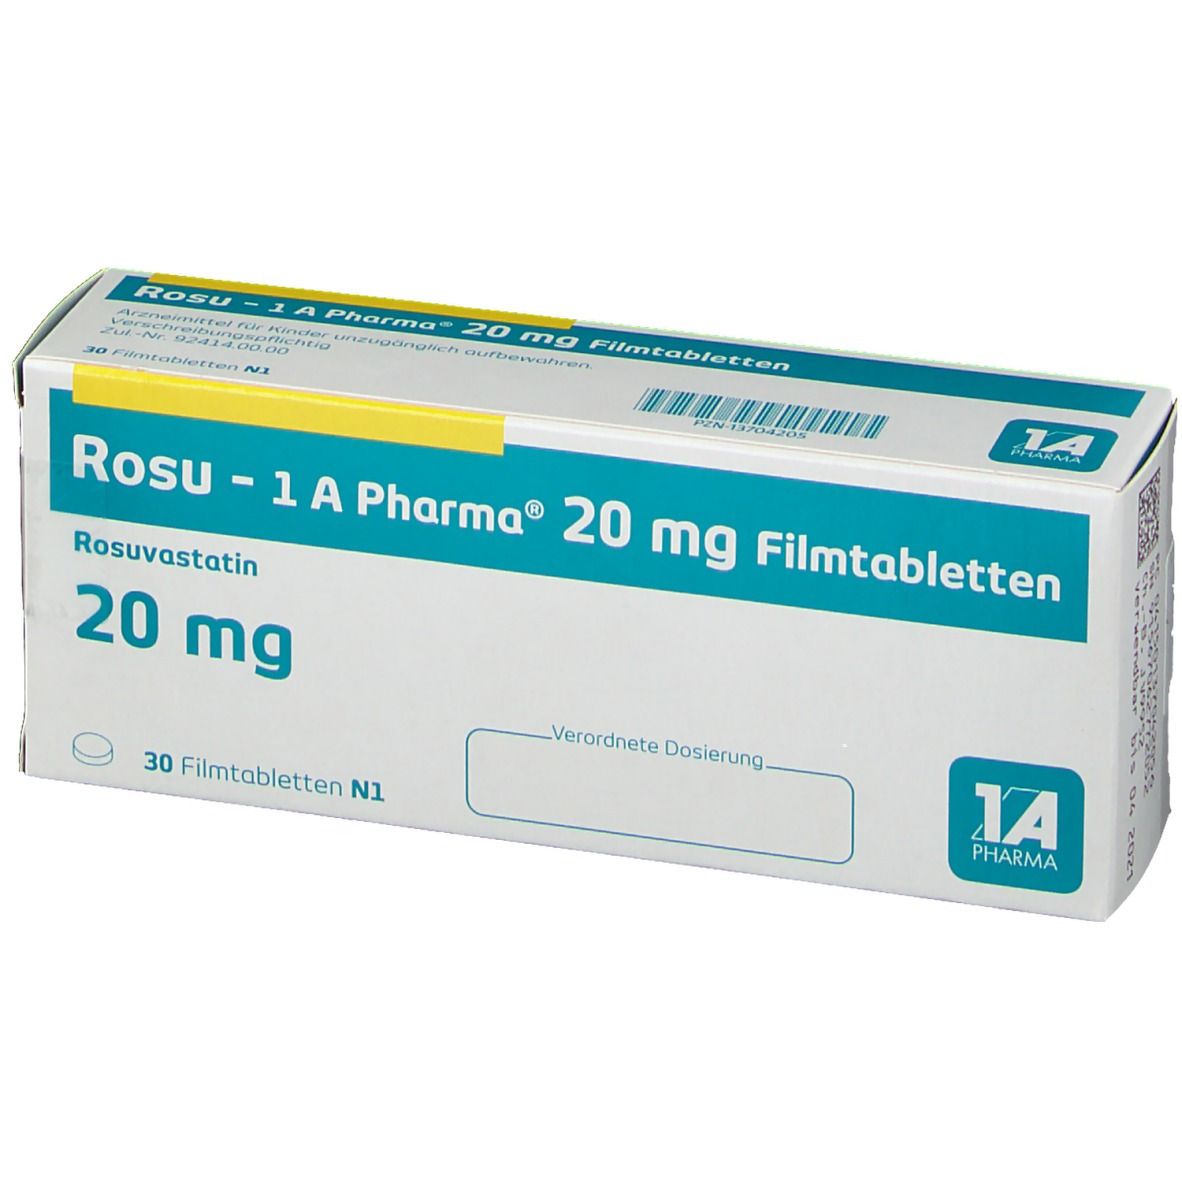 Rosu - 1 A Pharma® 20 mg